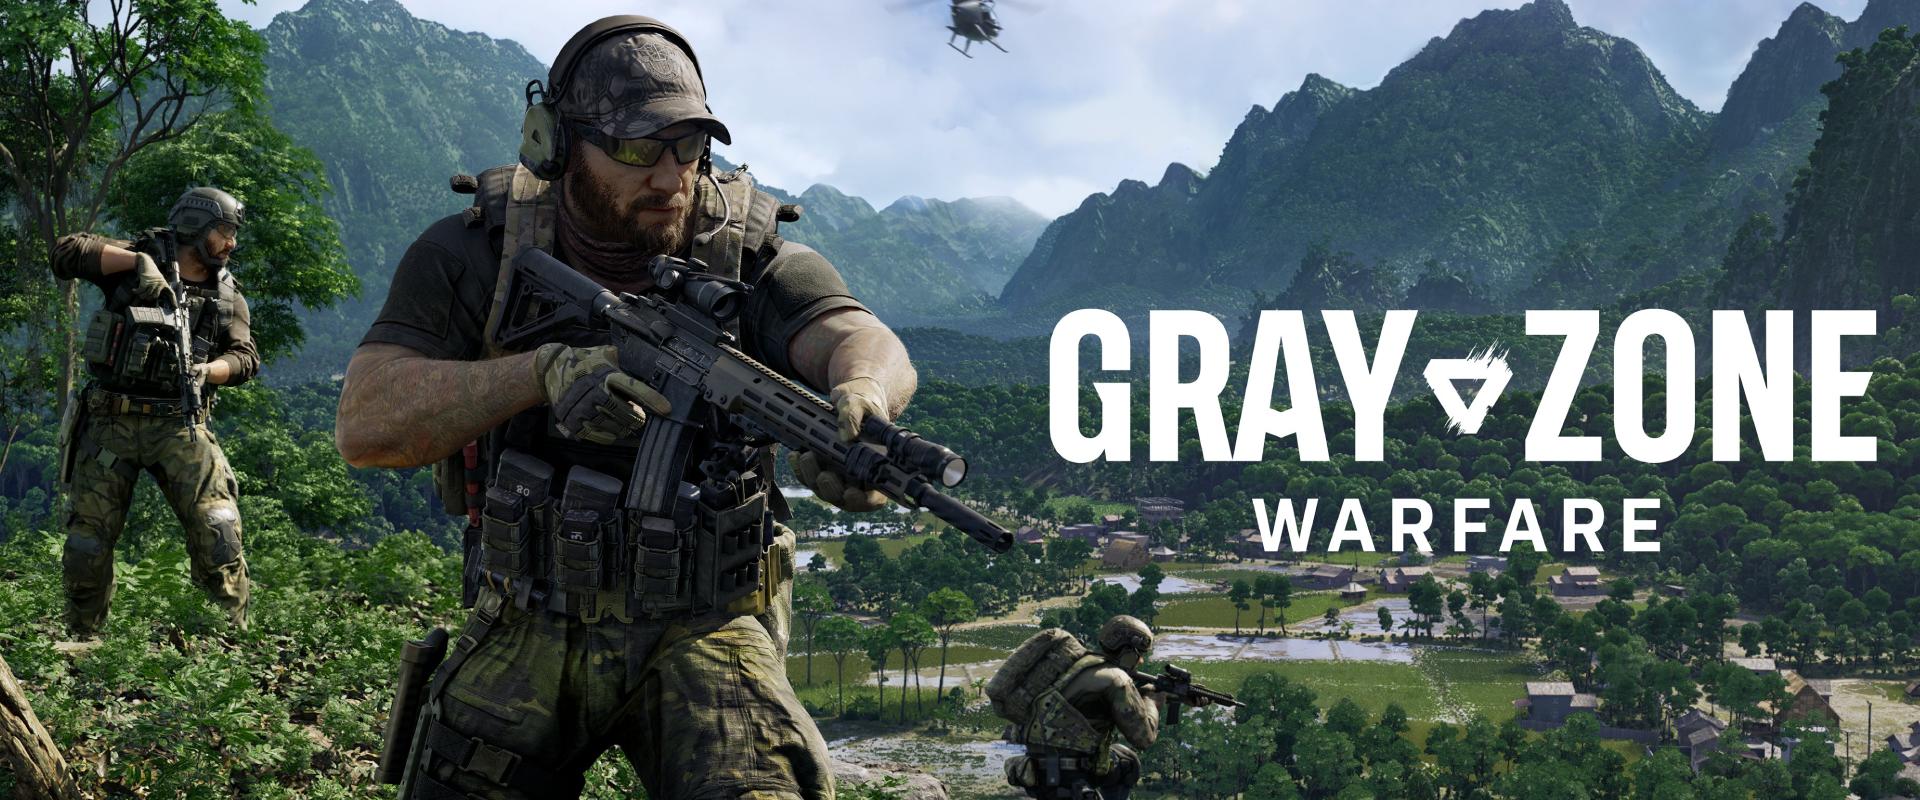 Gray Zone Warfare: 500 ezres eladást ünnepelnek a cseh fejlesztők